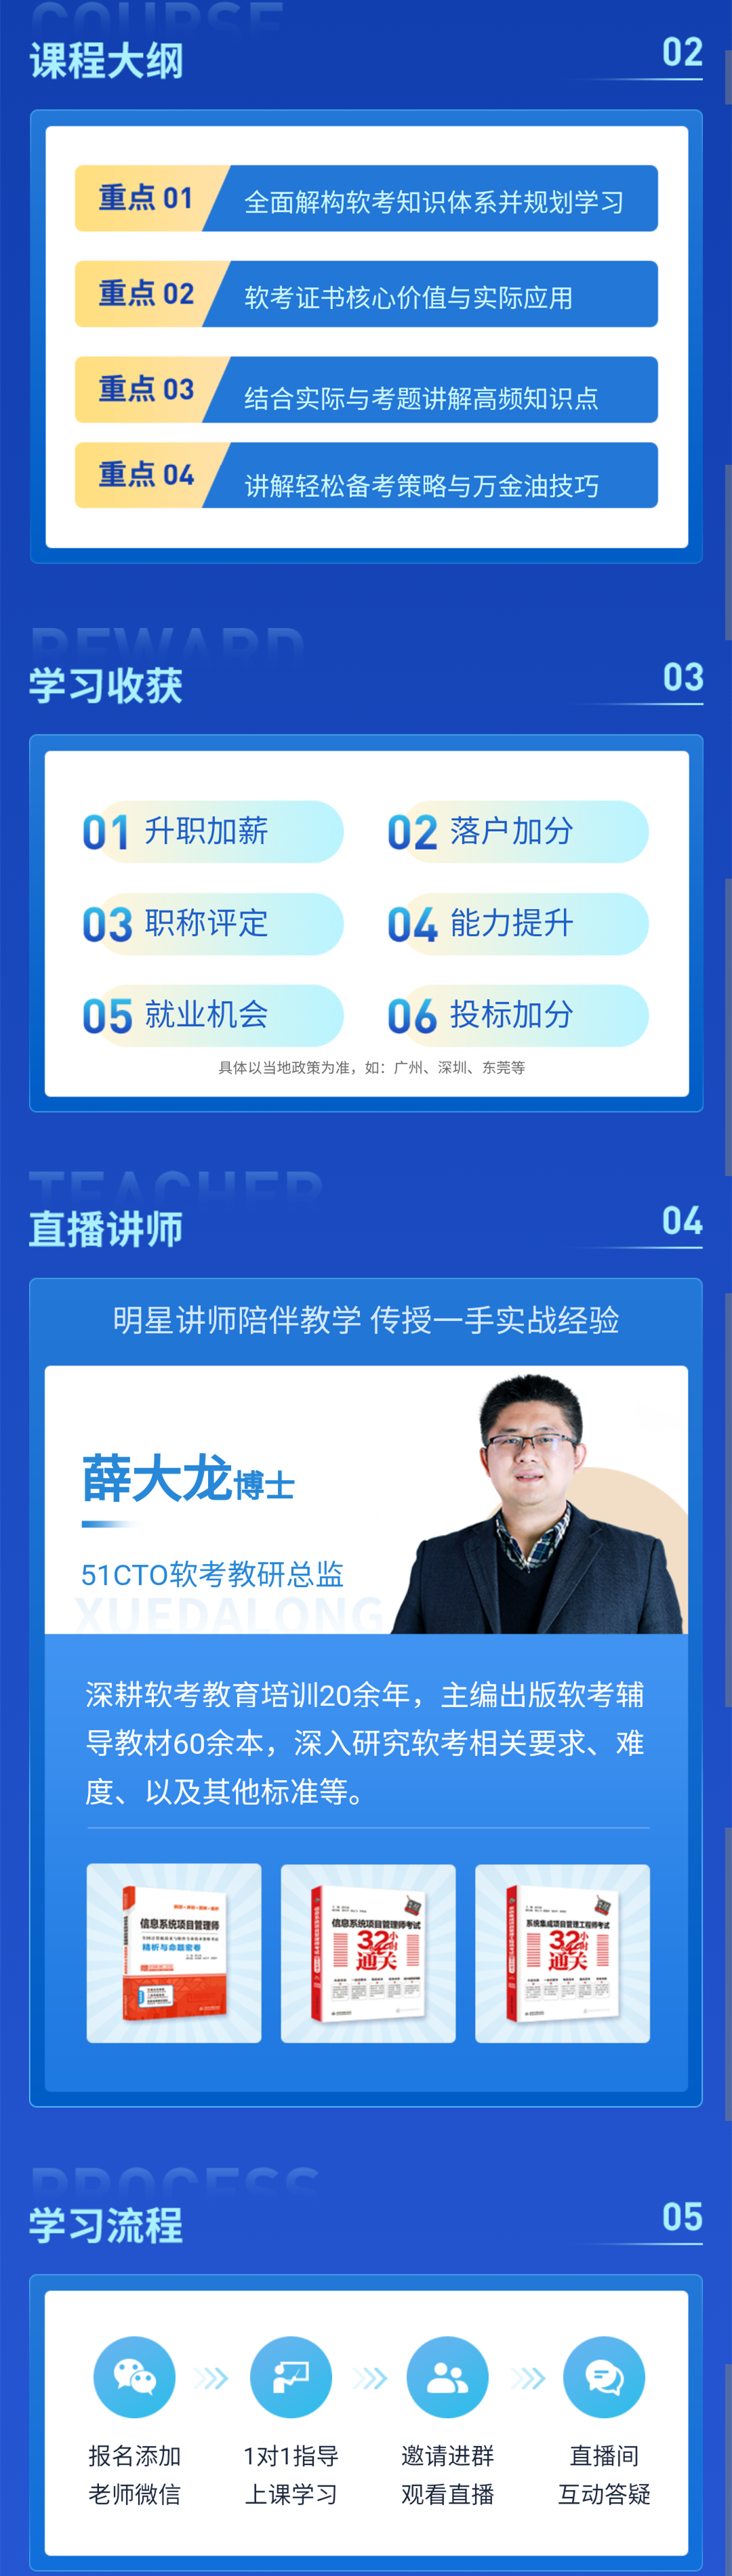 四川省发布2022上半年软考报名通知_计算机技术_05